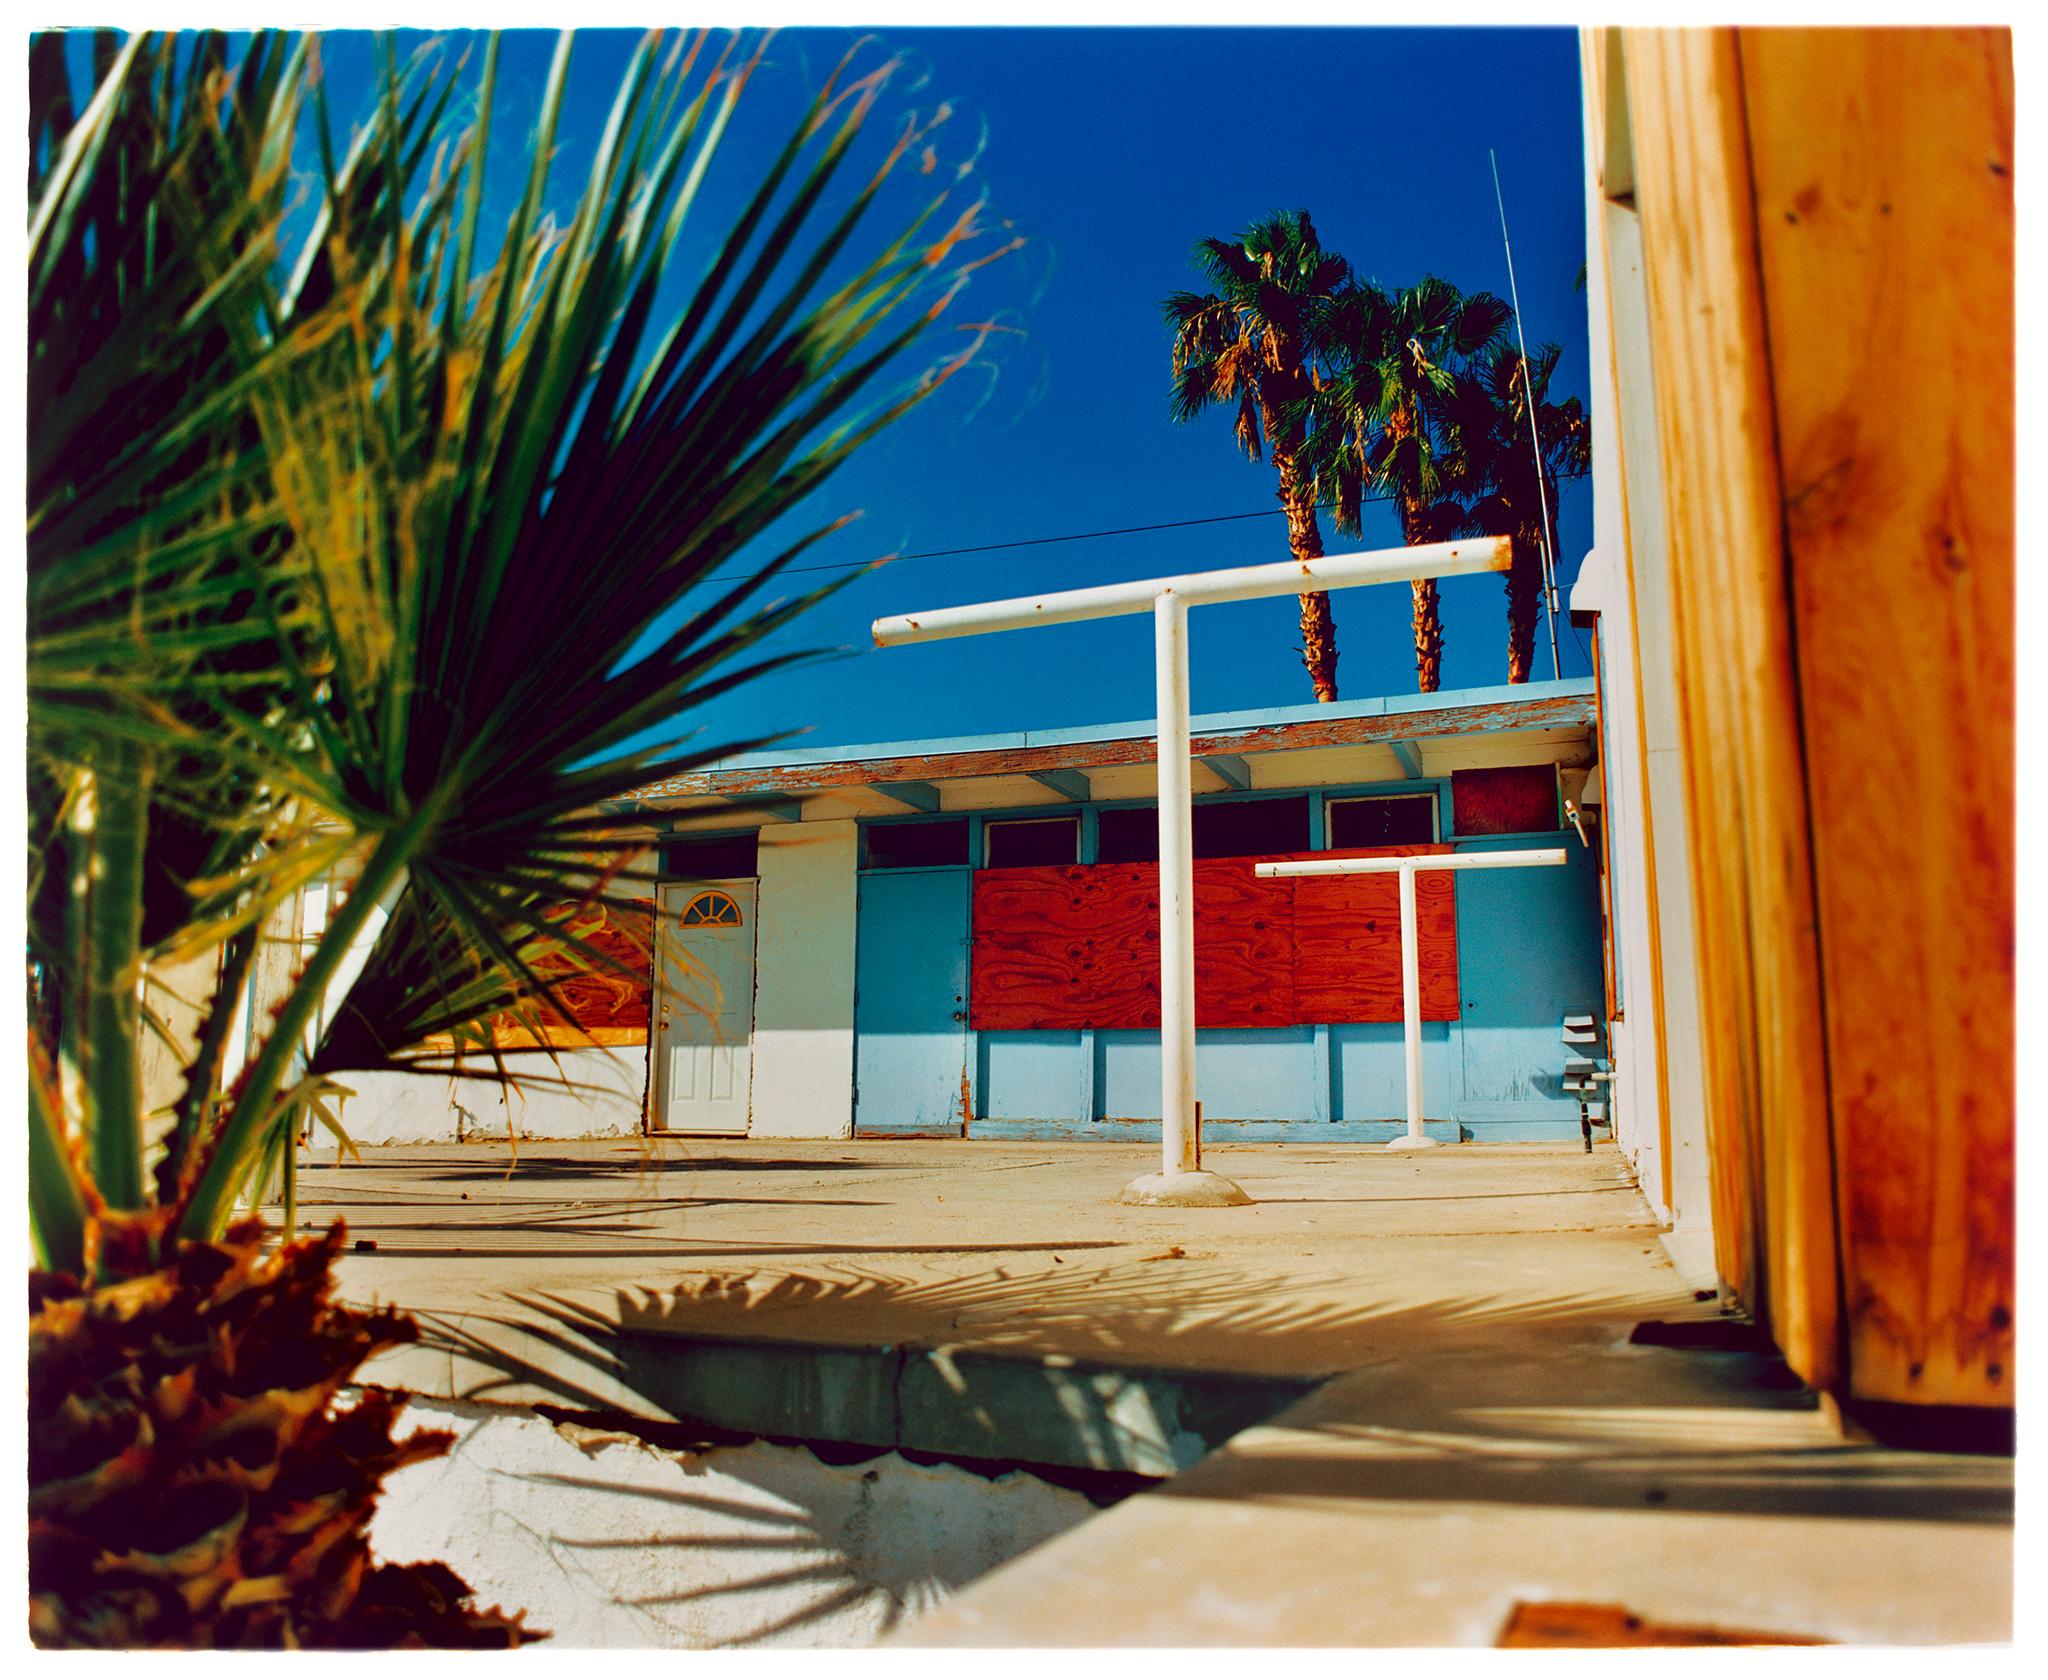 Landscape Photograph Richard Heeps - Motel Desert Shores, Salton Sea, Californie - Photographie couleur américaine